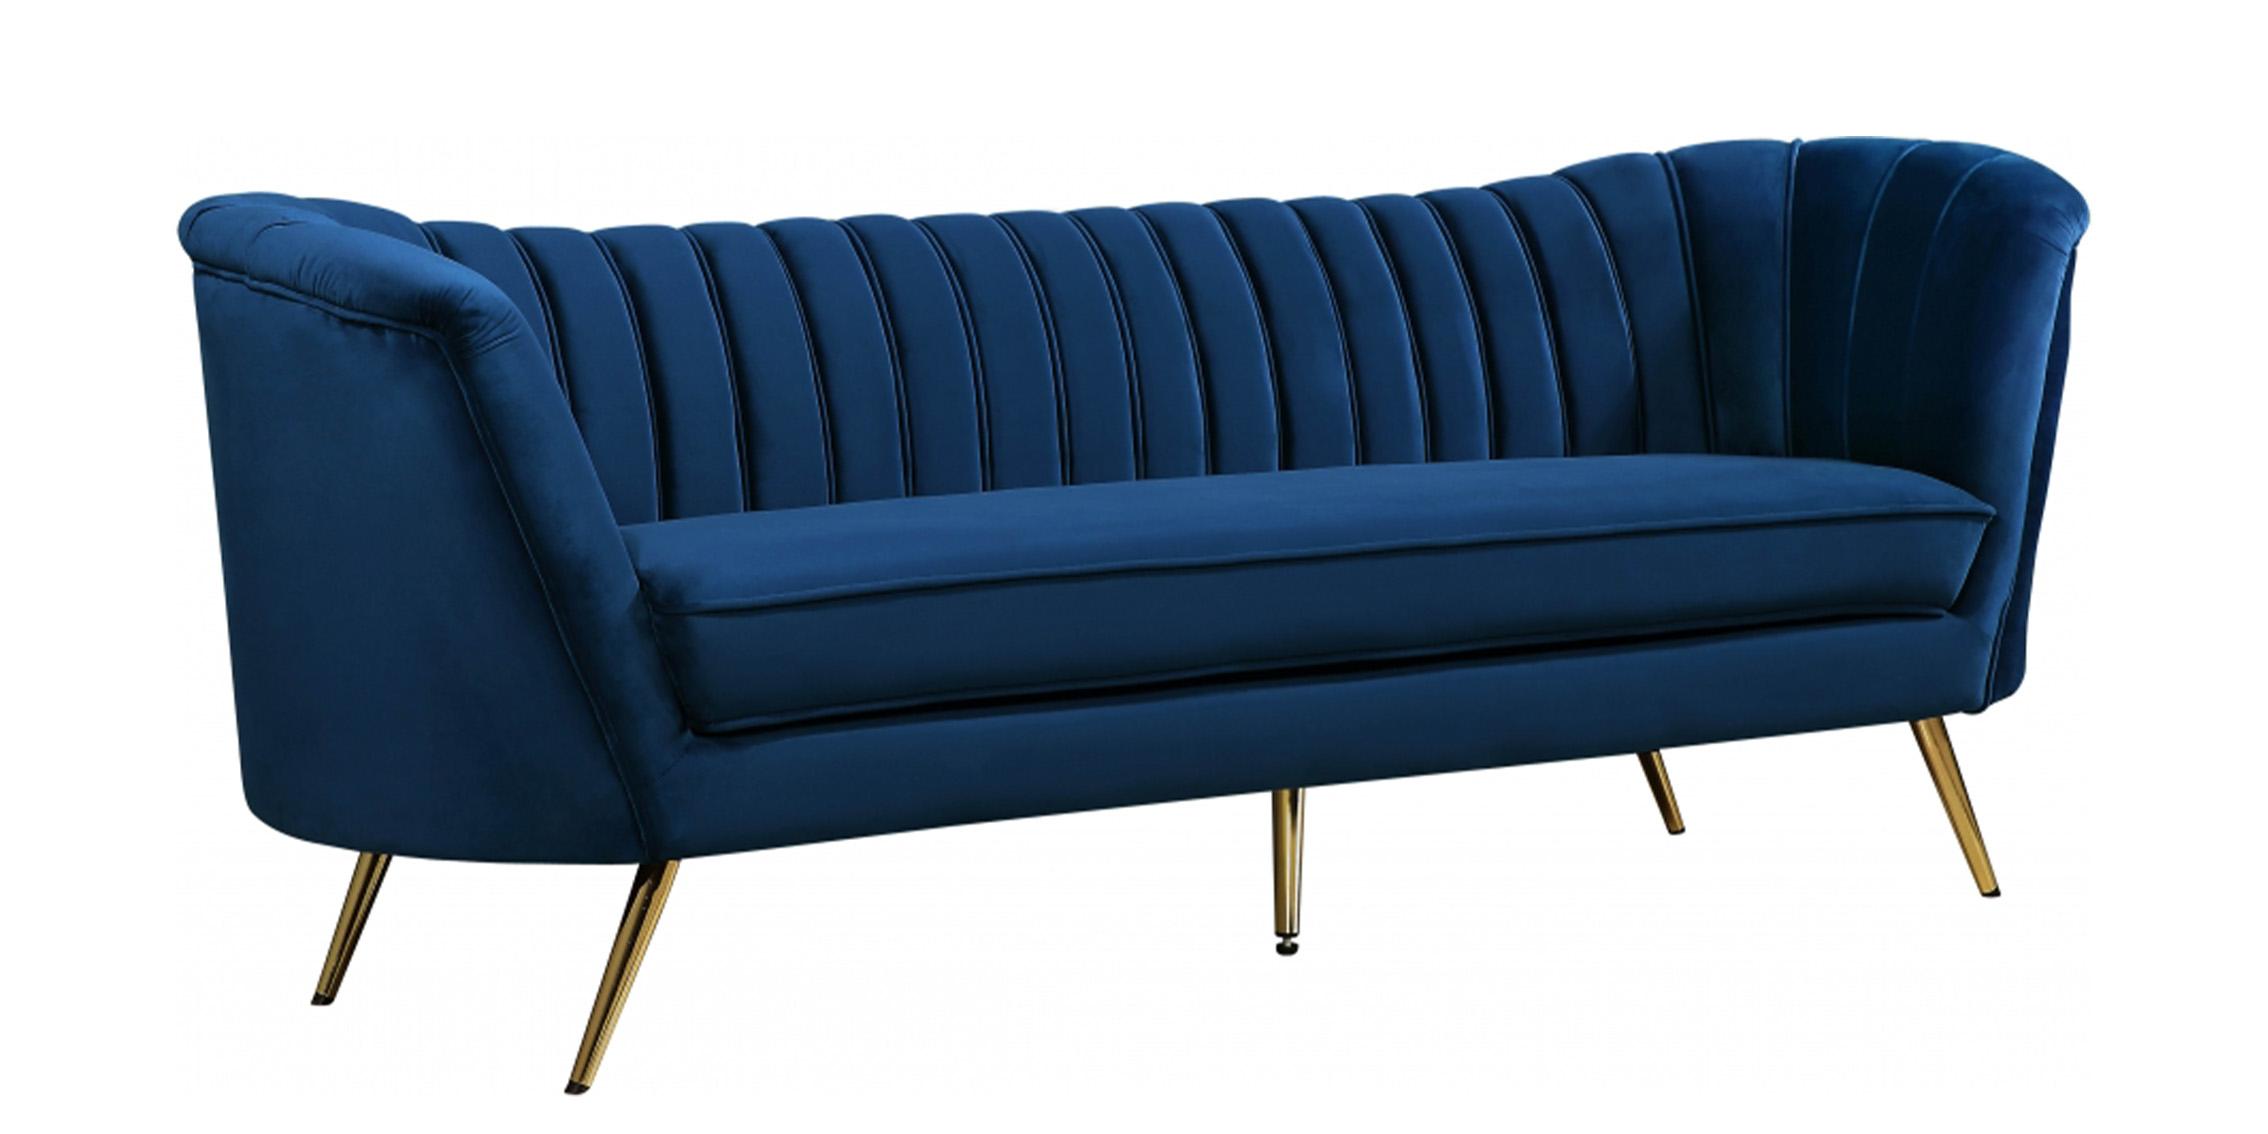 Contemporary, Modern Sofa Margo 622Navy-S 622Navy-S in Navy blue Velvet